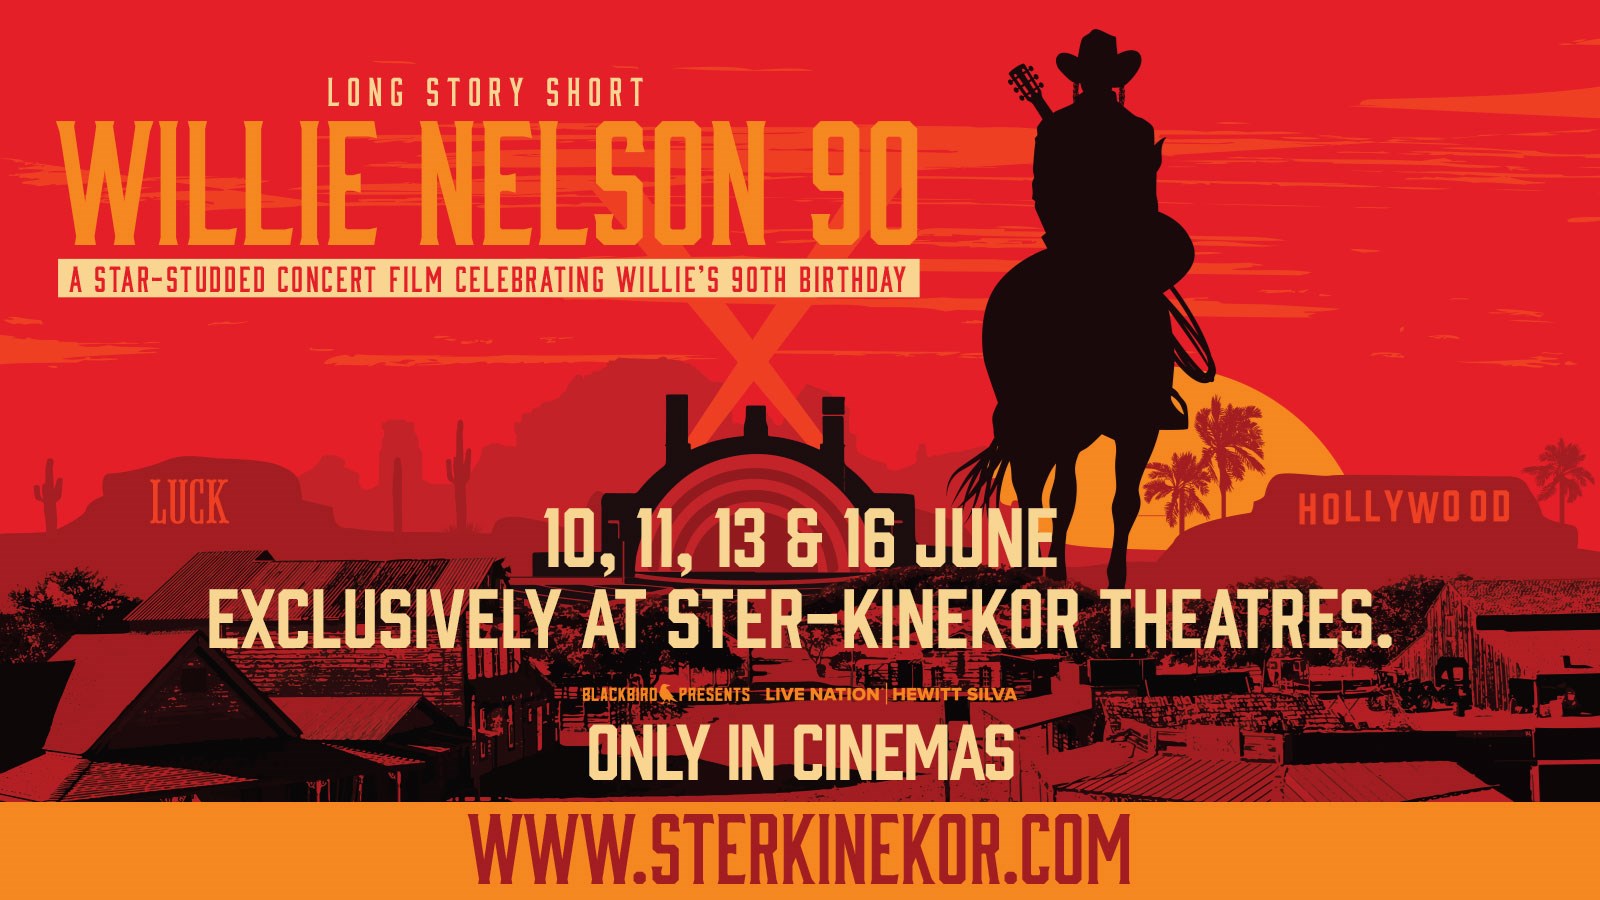 LONG STORY SHORT: WILLIE NELSON 90